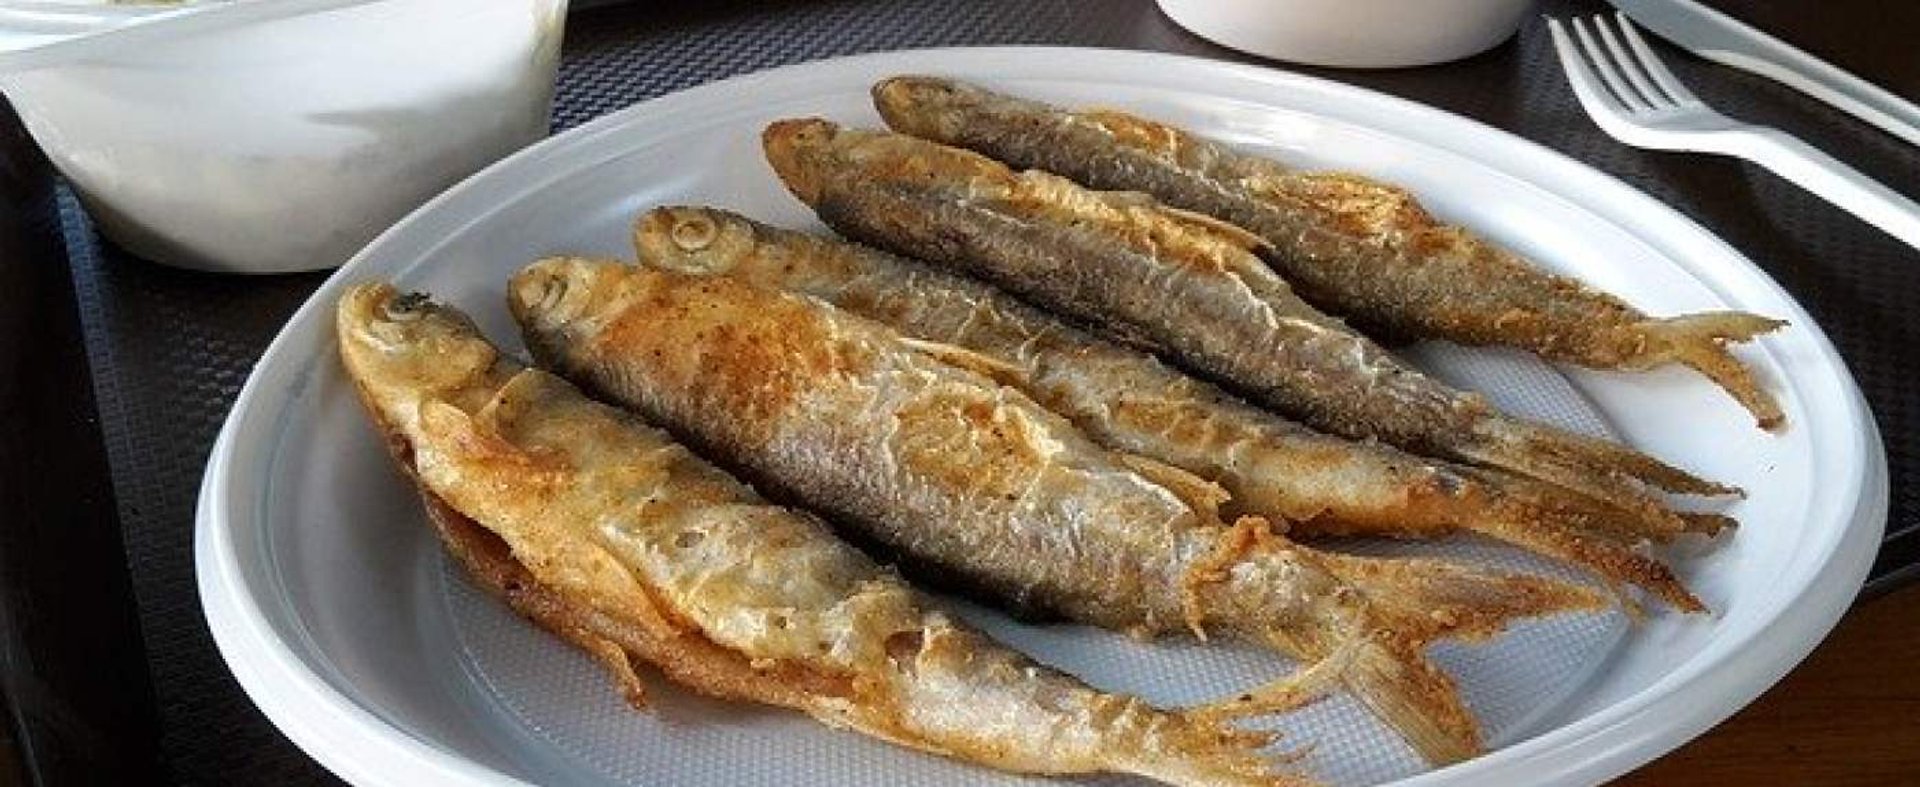 Ryba w restauracji nie musi pochodzić z Bałtyku.